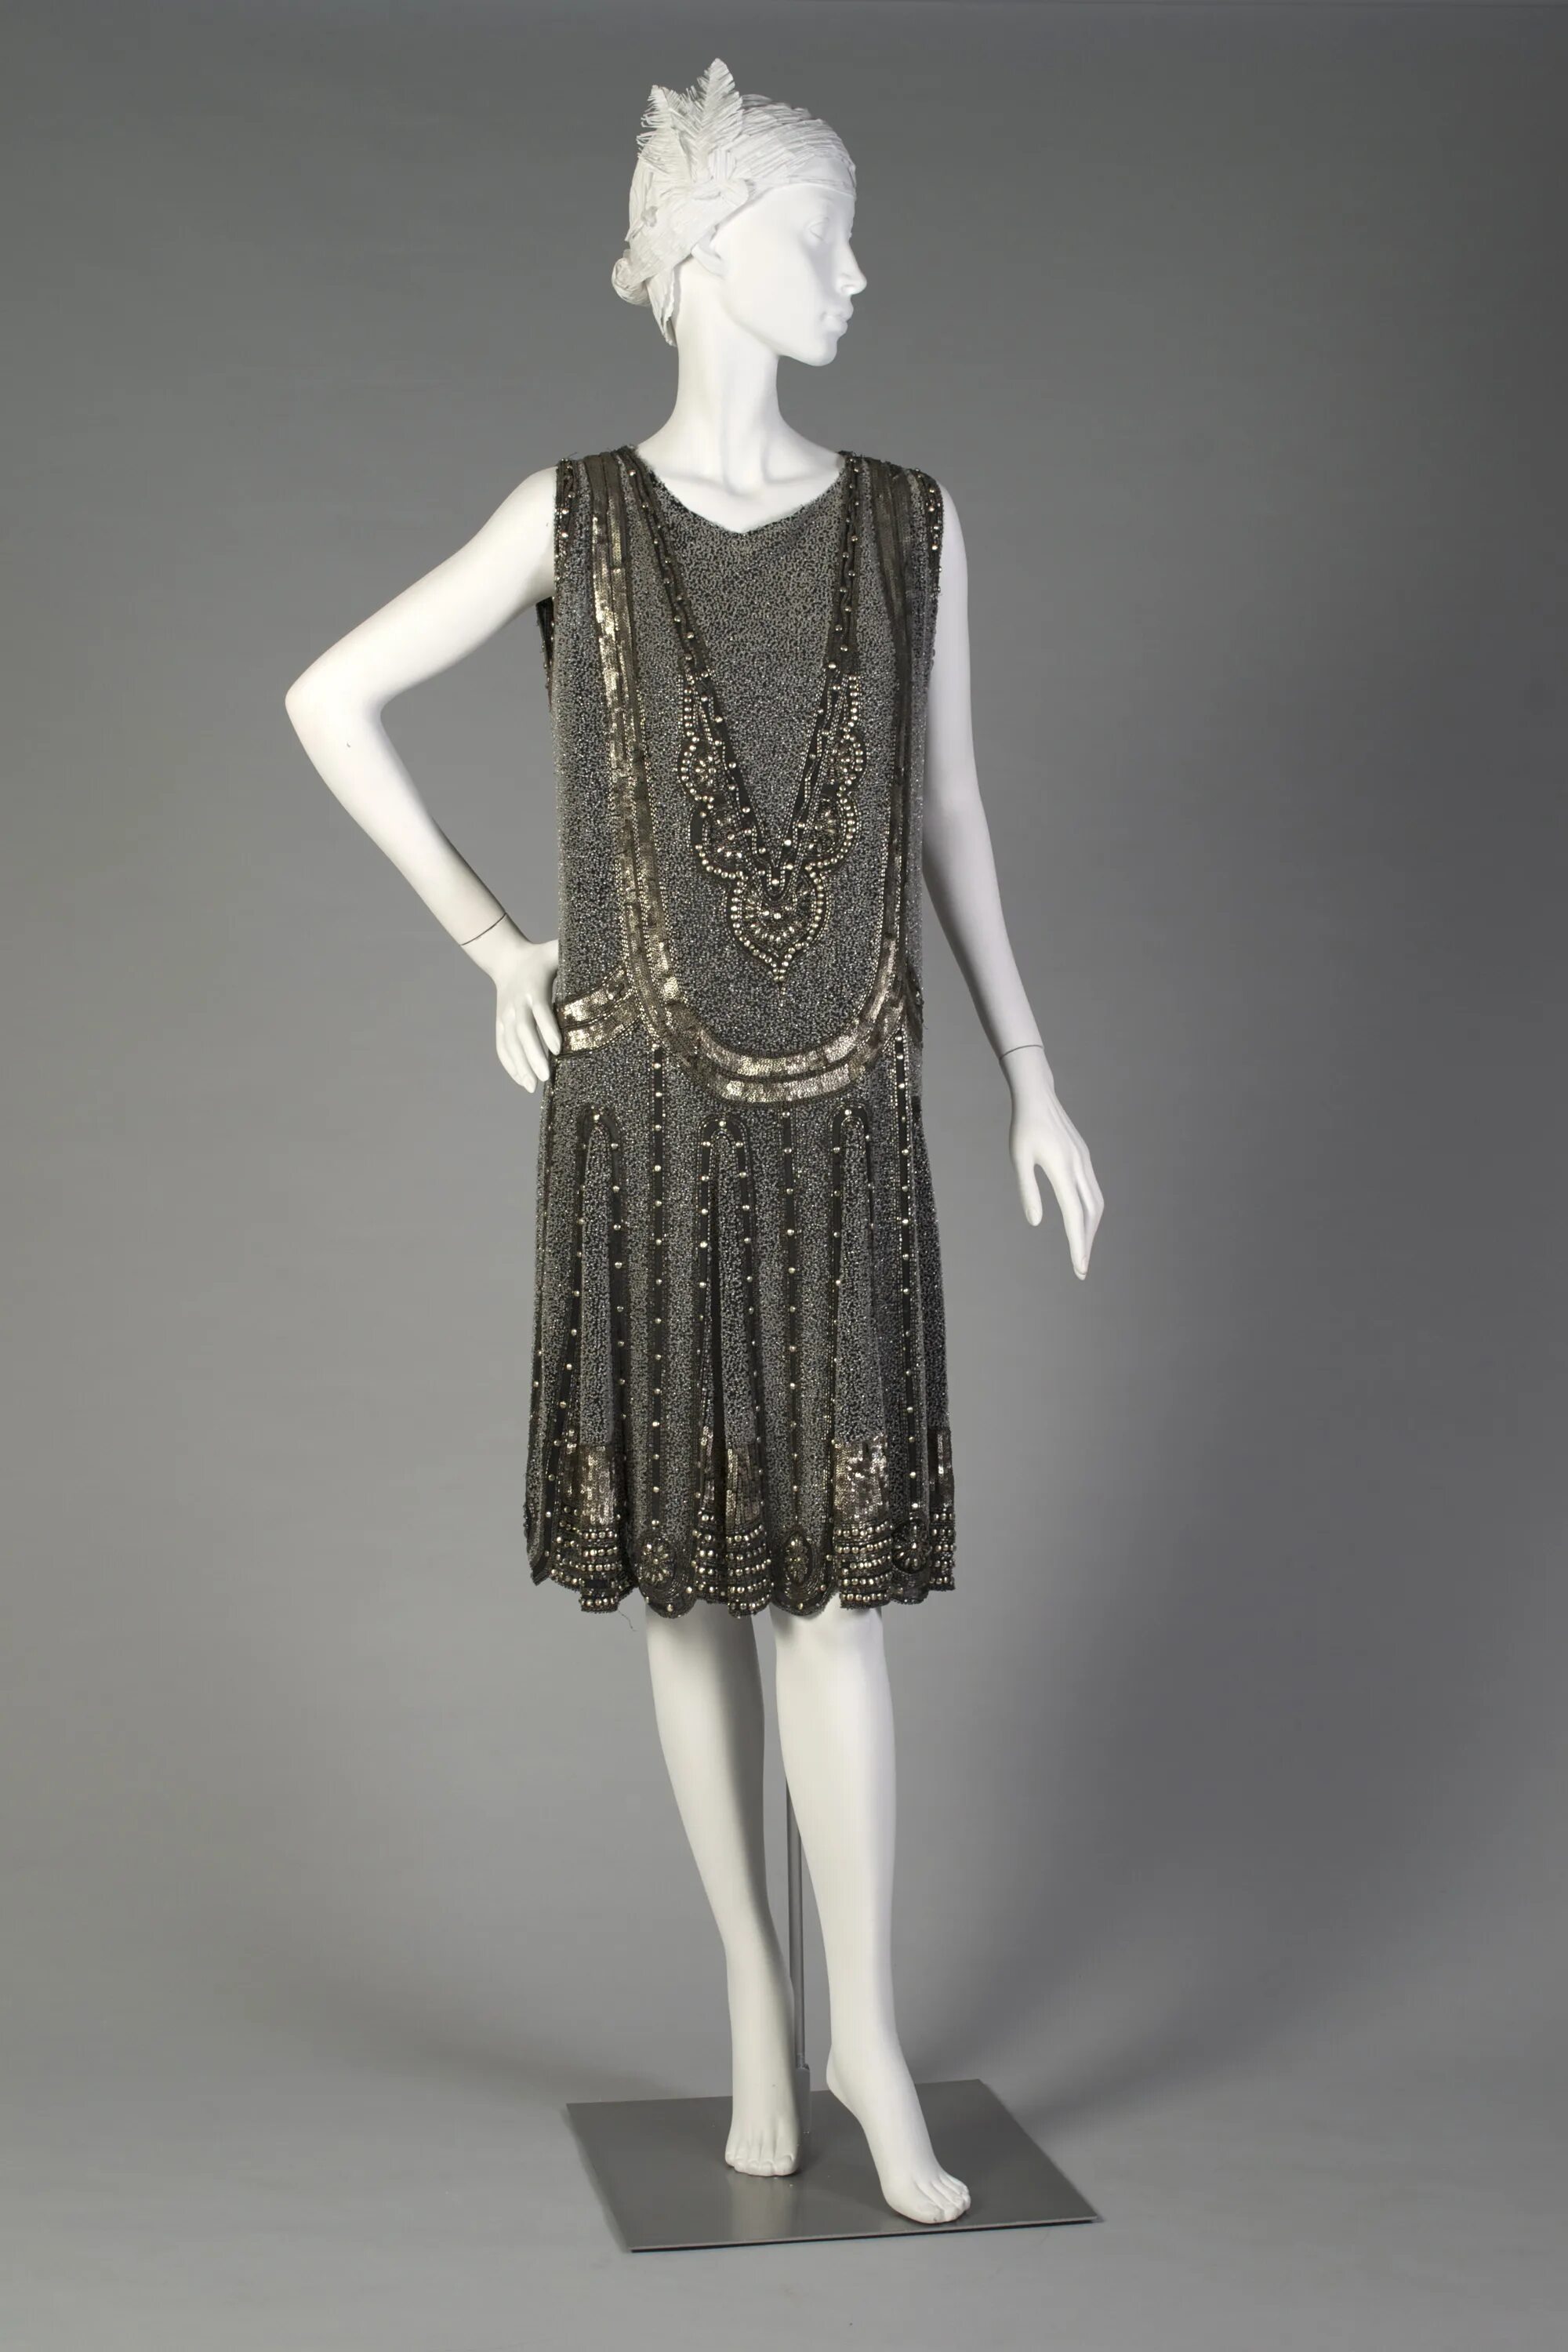 Мода 20х веков. Платье флаппер 1920. 20е годы 20 века мода. Мода 20-х годов 20 века женщины.